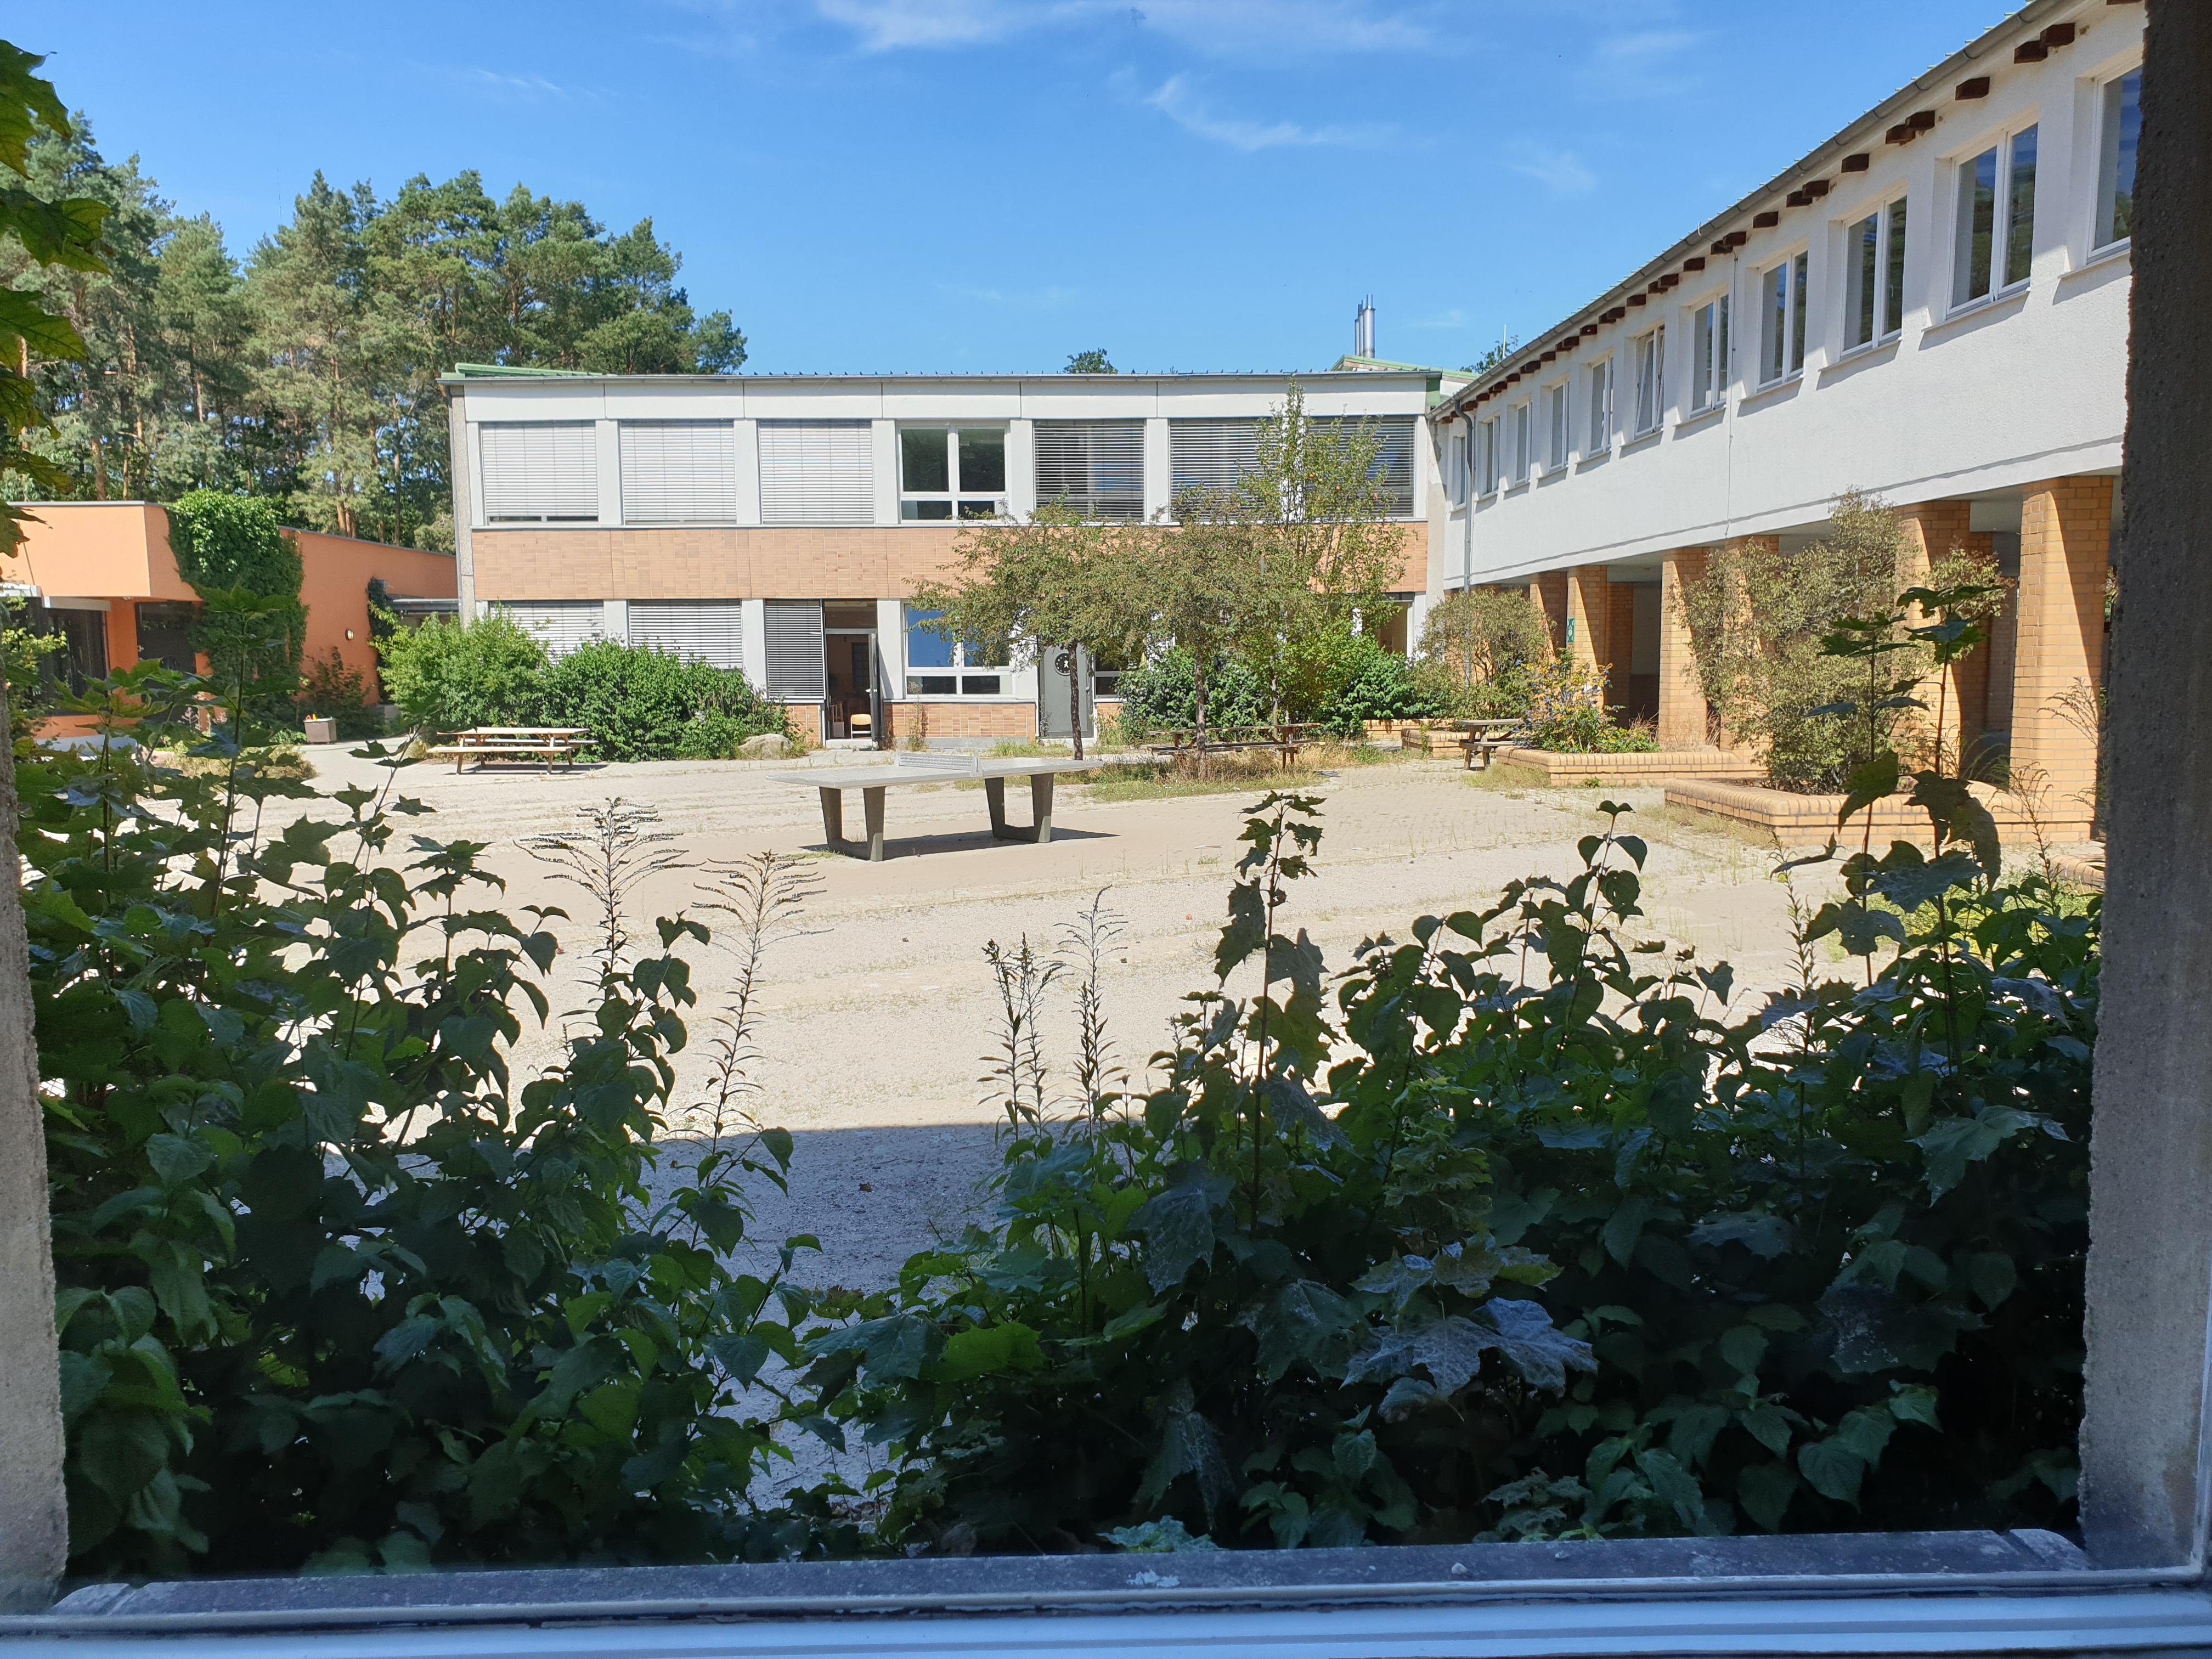 Grundschule am Ritterfeld